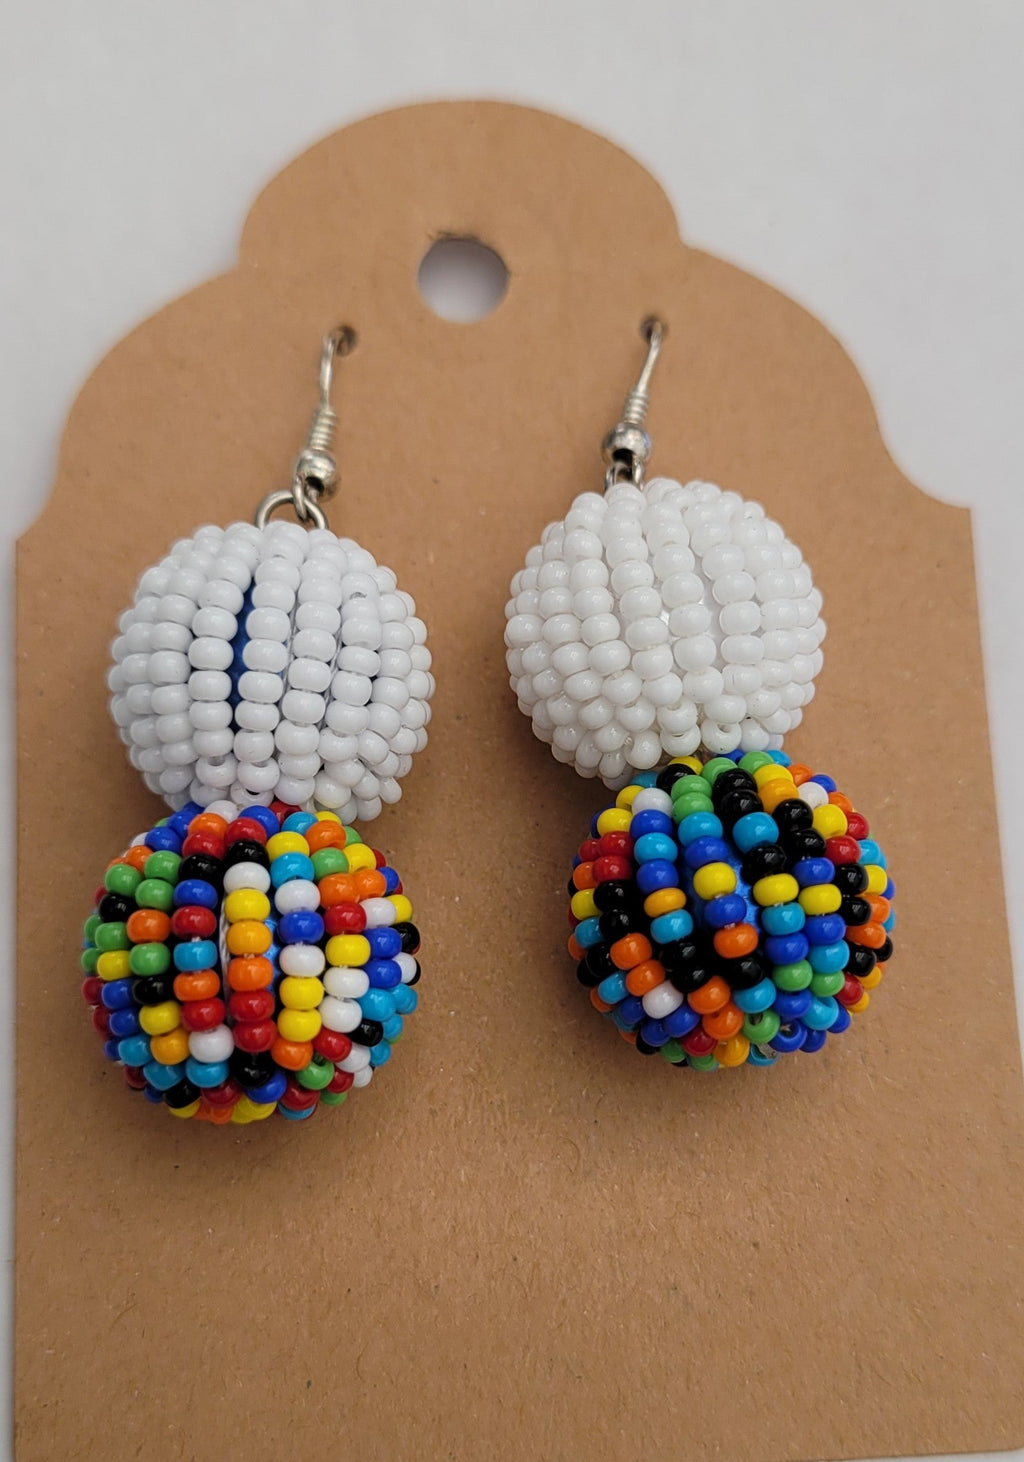 Halima Multicolored Handmade Seed Beads  earrings 2